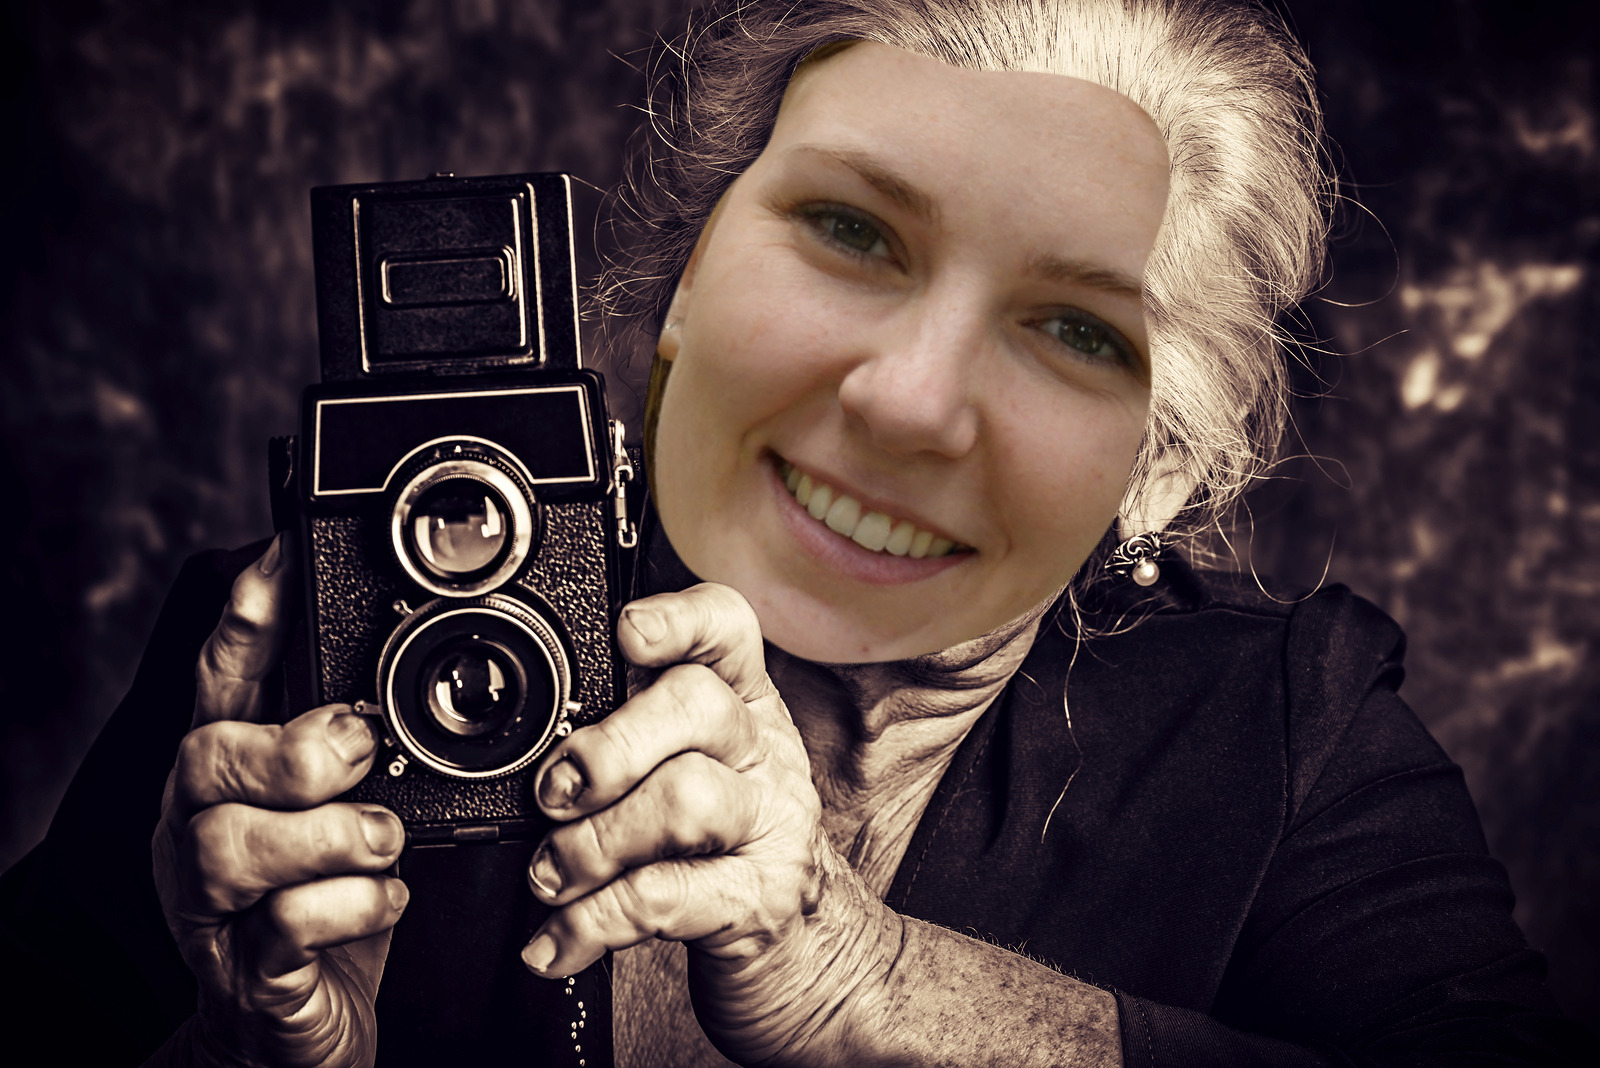 Annalyn Frame camera